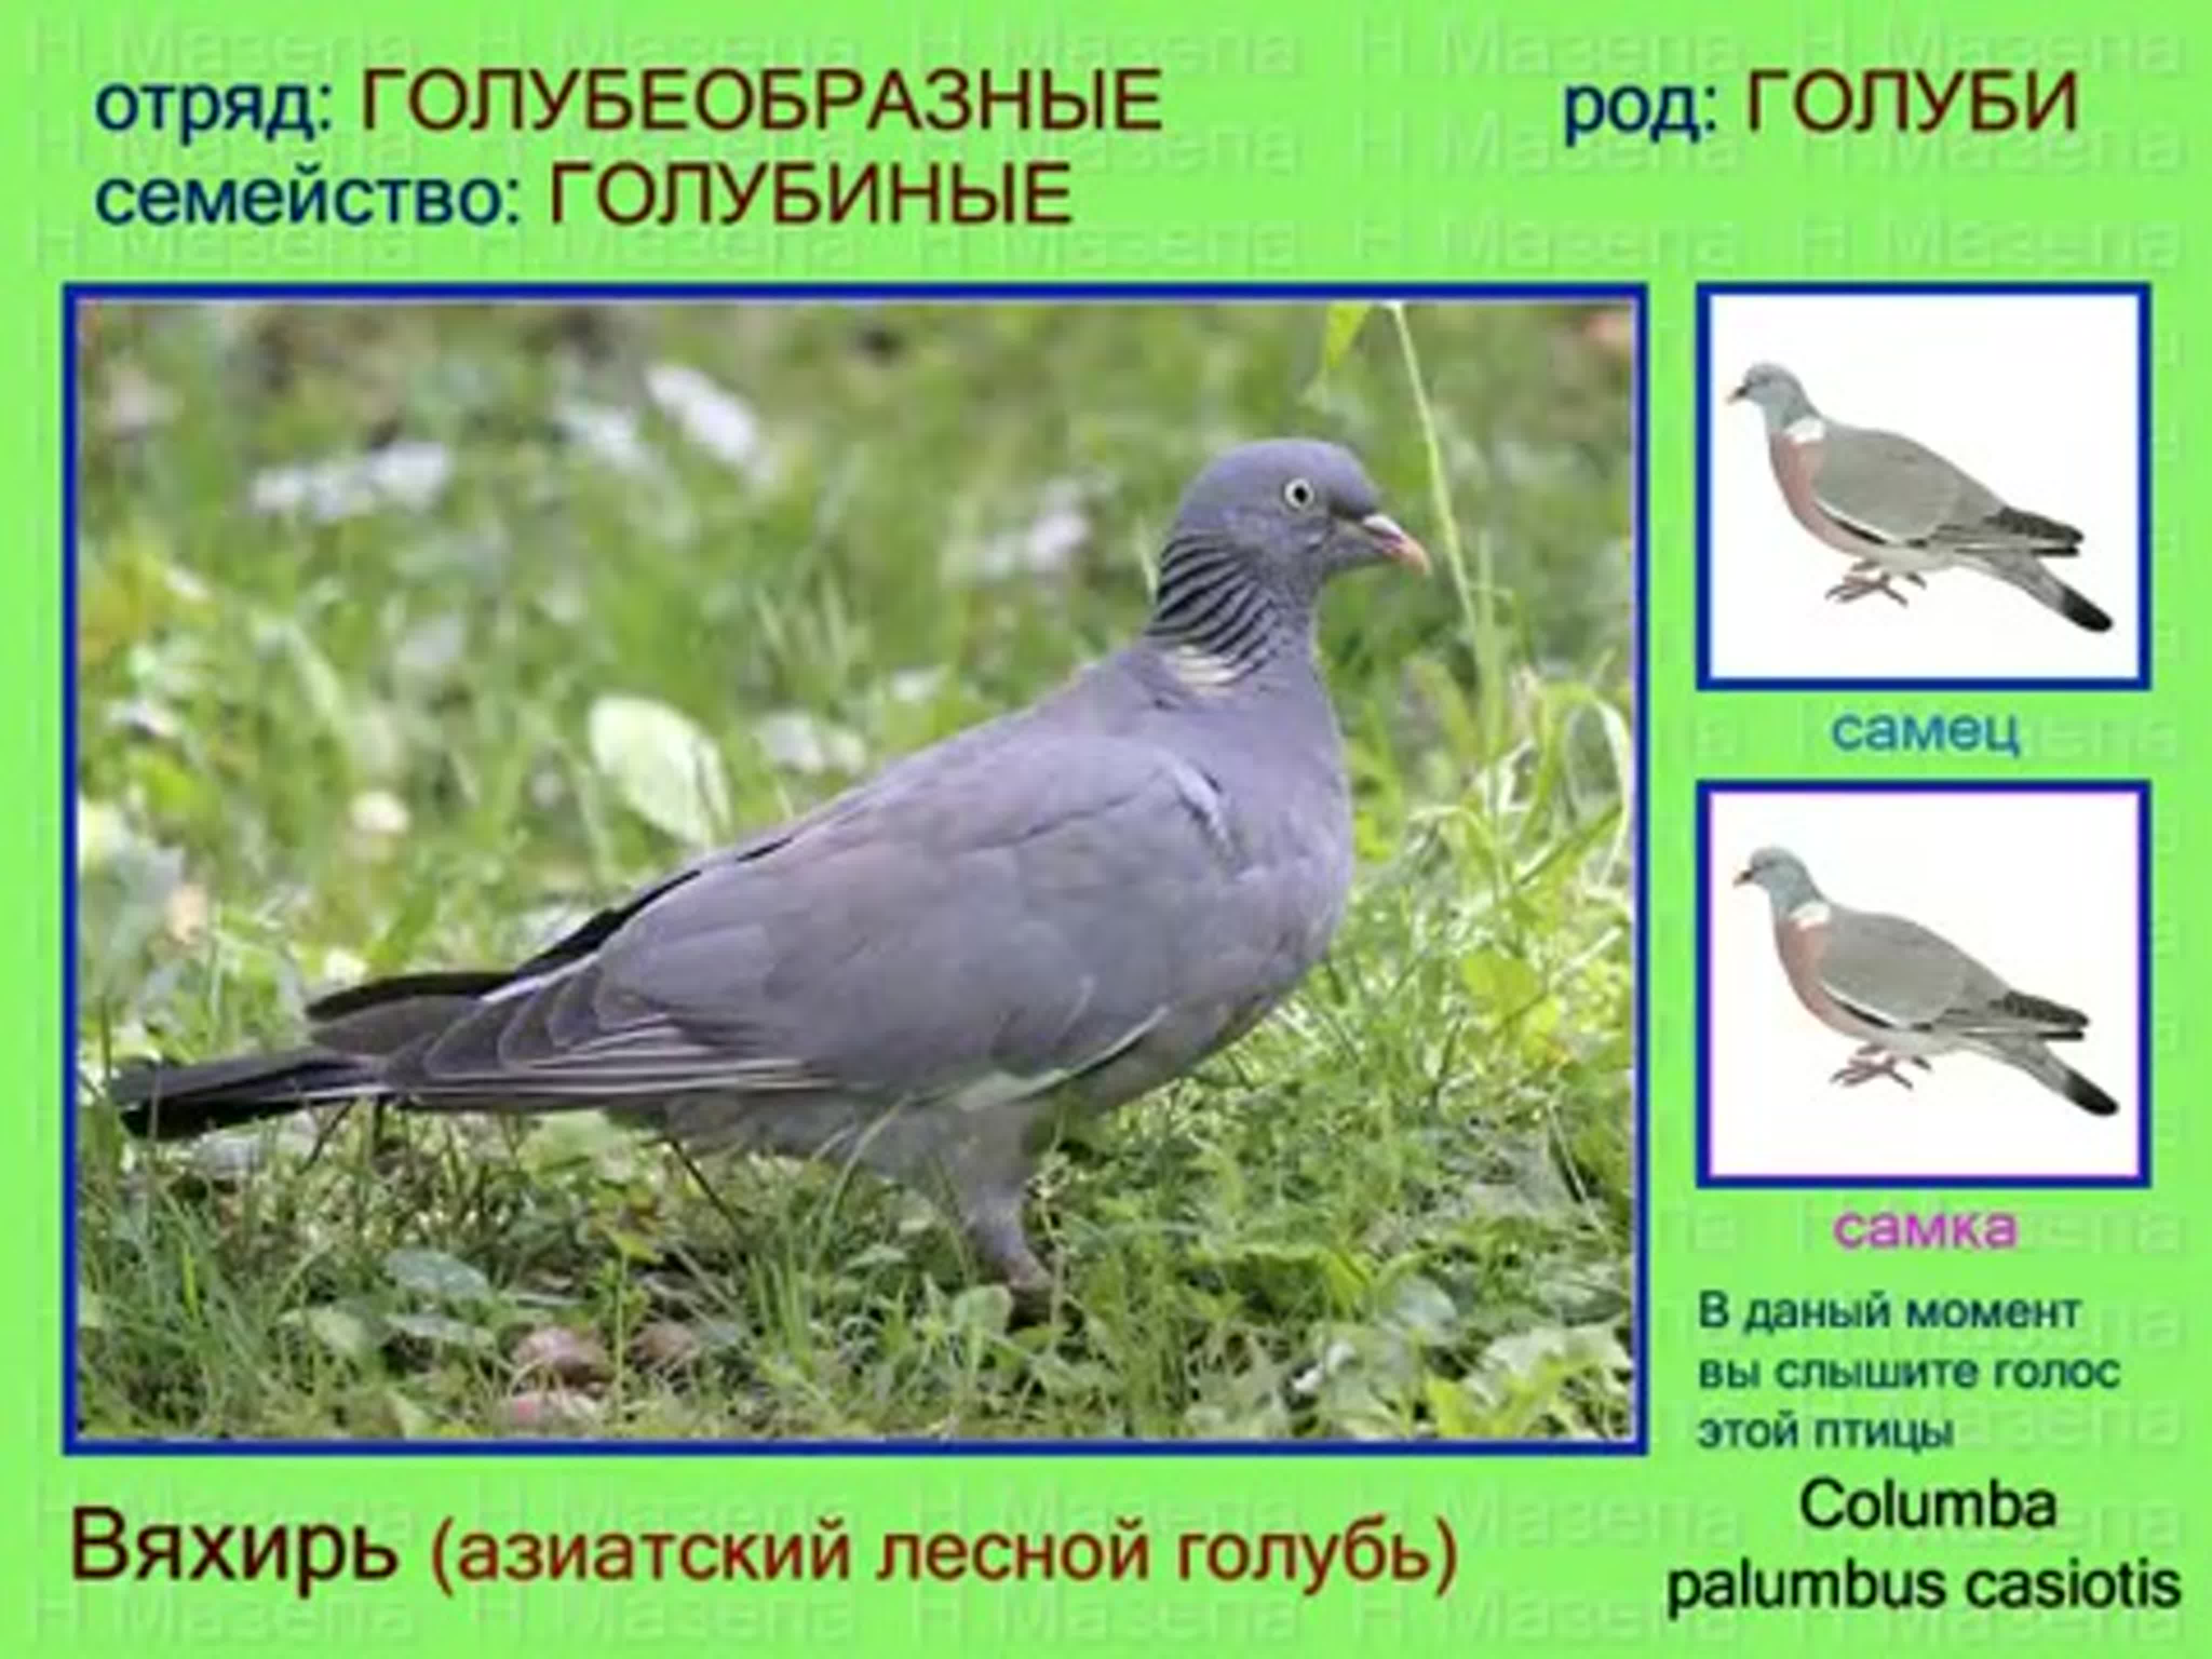 Описание и характеристики лесного голубя витютень: особенности крупной породы